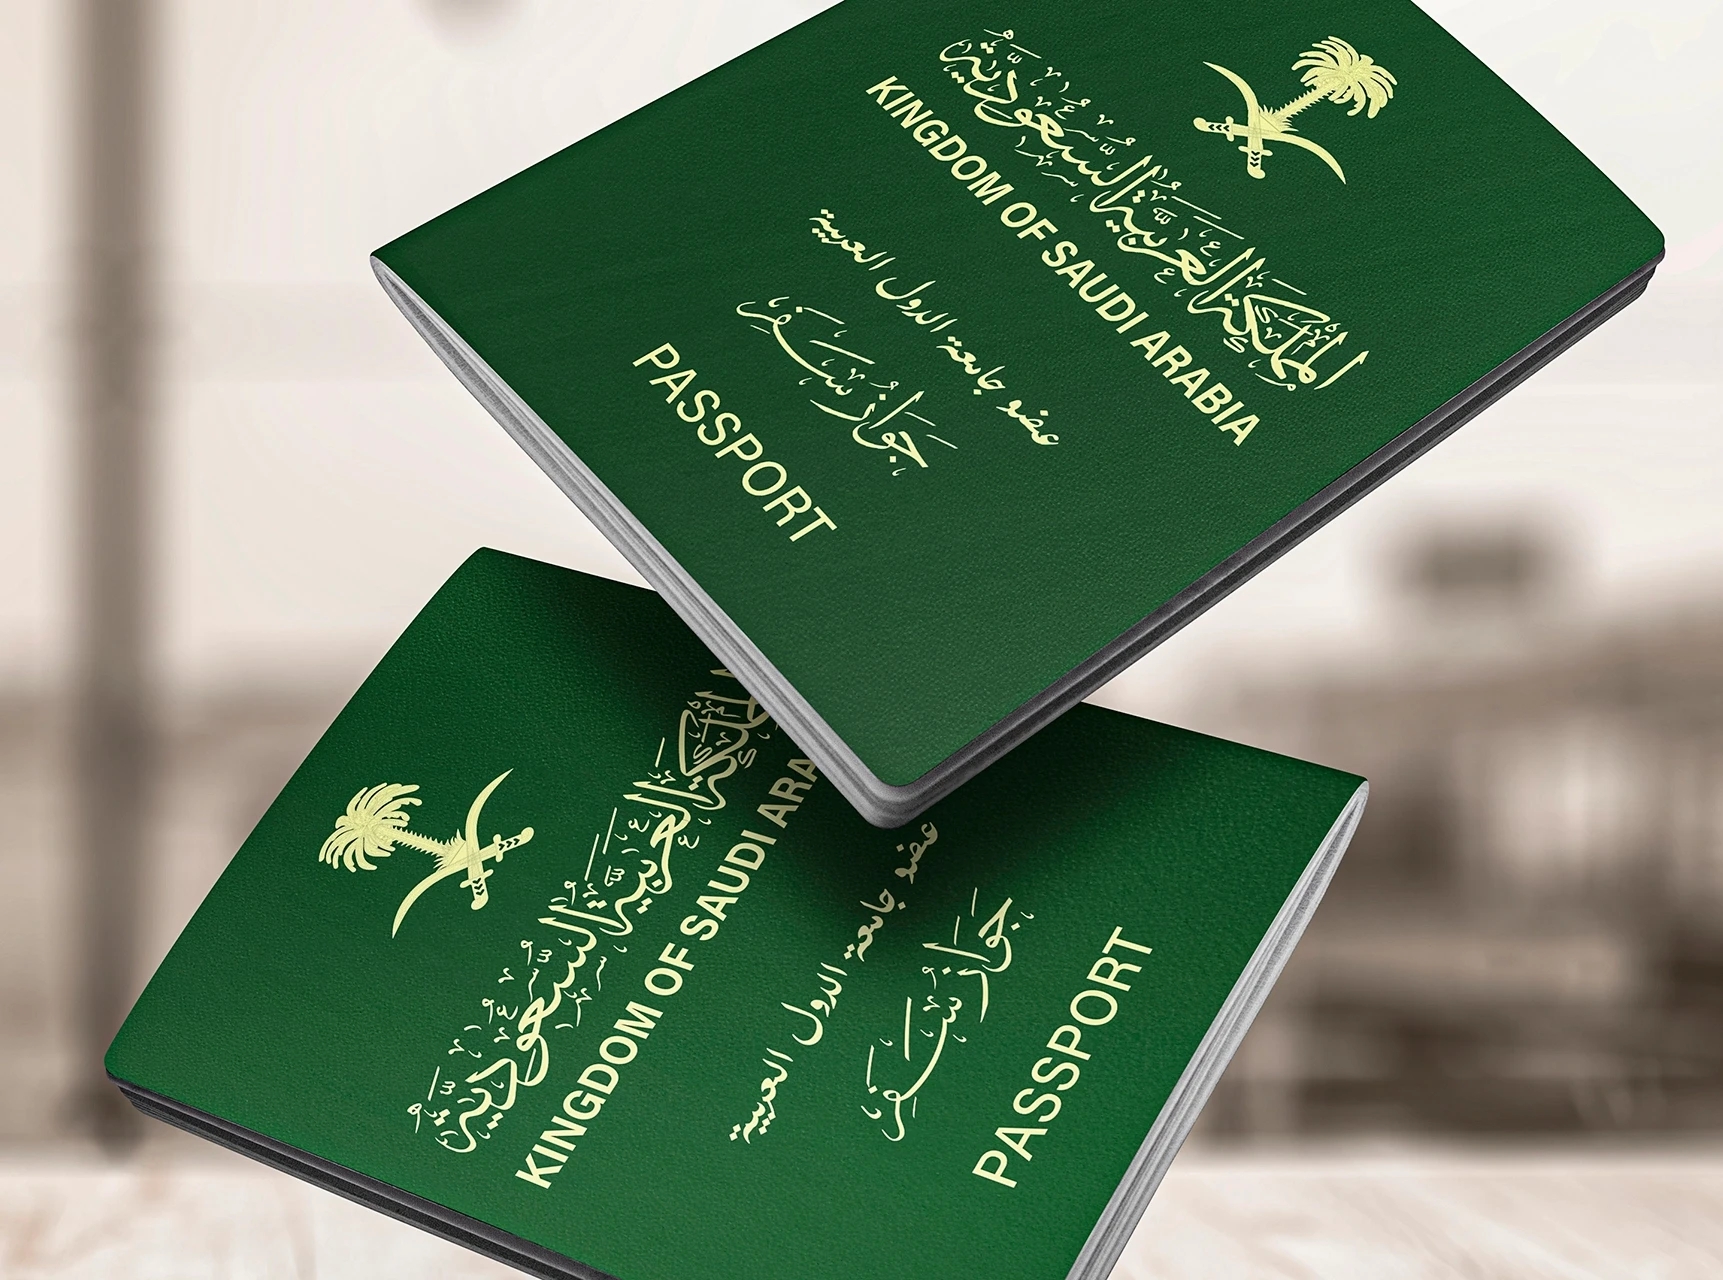 شروط الحصول على الجنسية السعودية بالقانون الجديد 1444 وطريقة التقديم بالمنصة